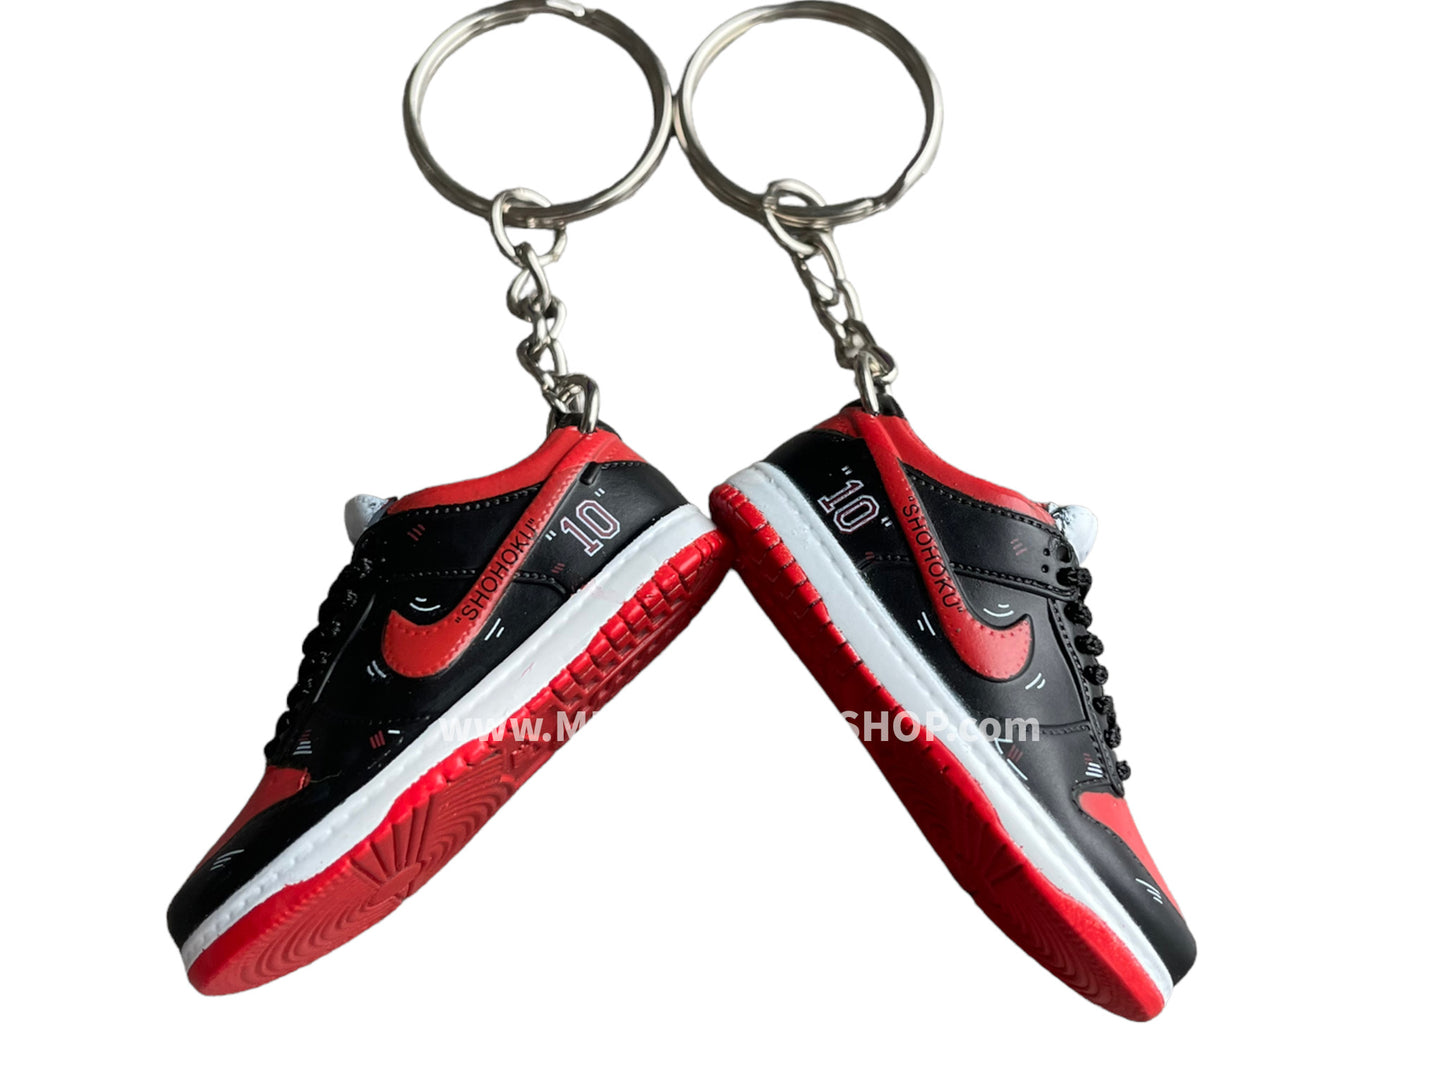 Mini sneaker keychain 3D Dunk - Slam Dunk - Sakuragi Black red